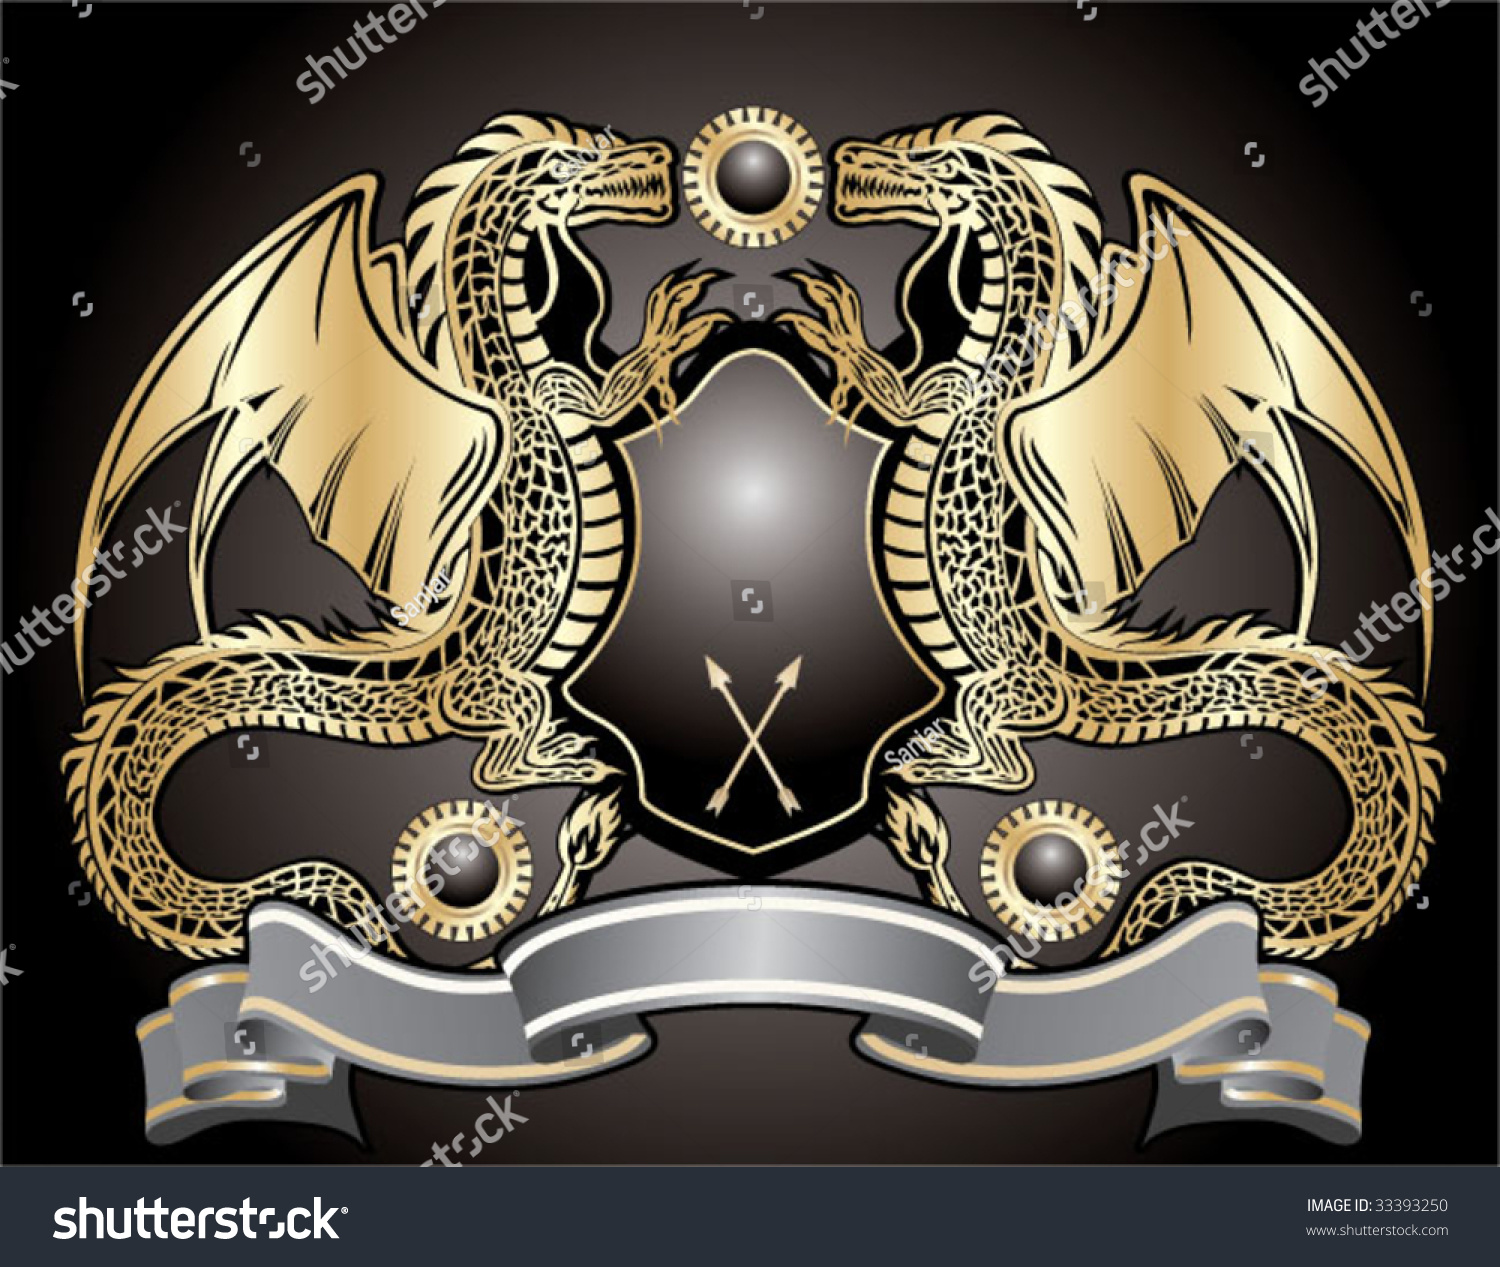 Герб с драконом и короной